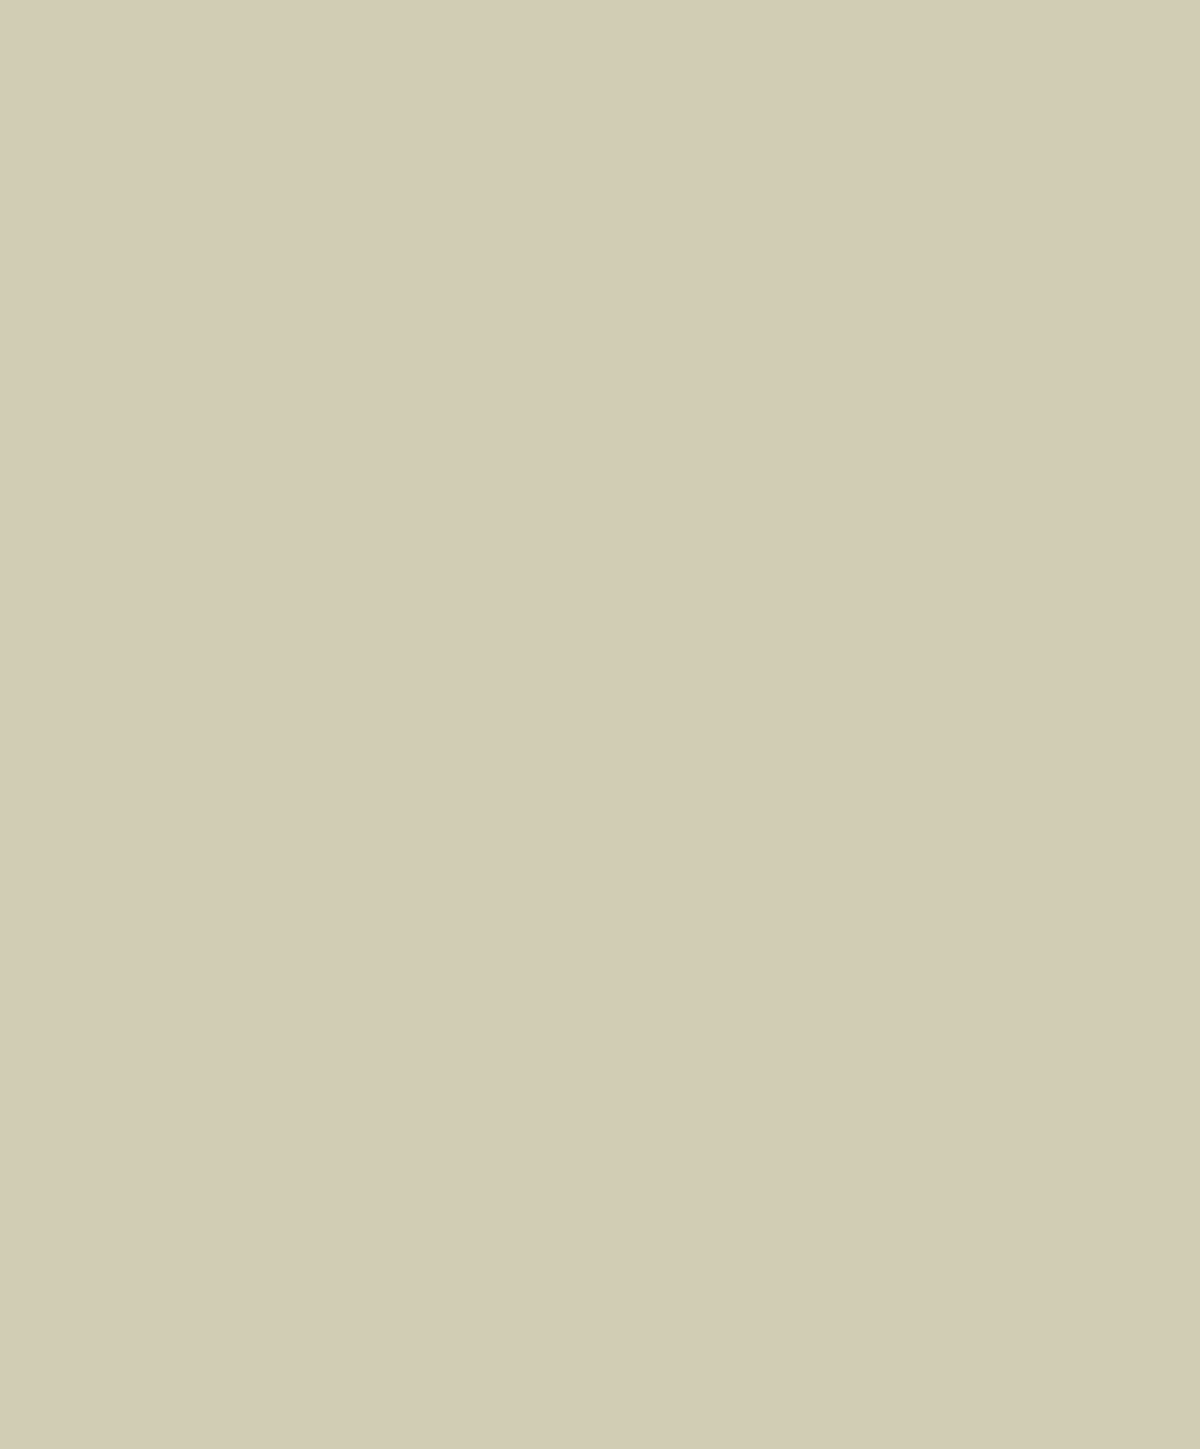 Елизавета Воронцова. Рисунок Петра Соколова. Ок. 1823. Музей В.А. Тропинина и московских художников его времени